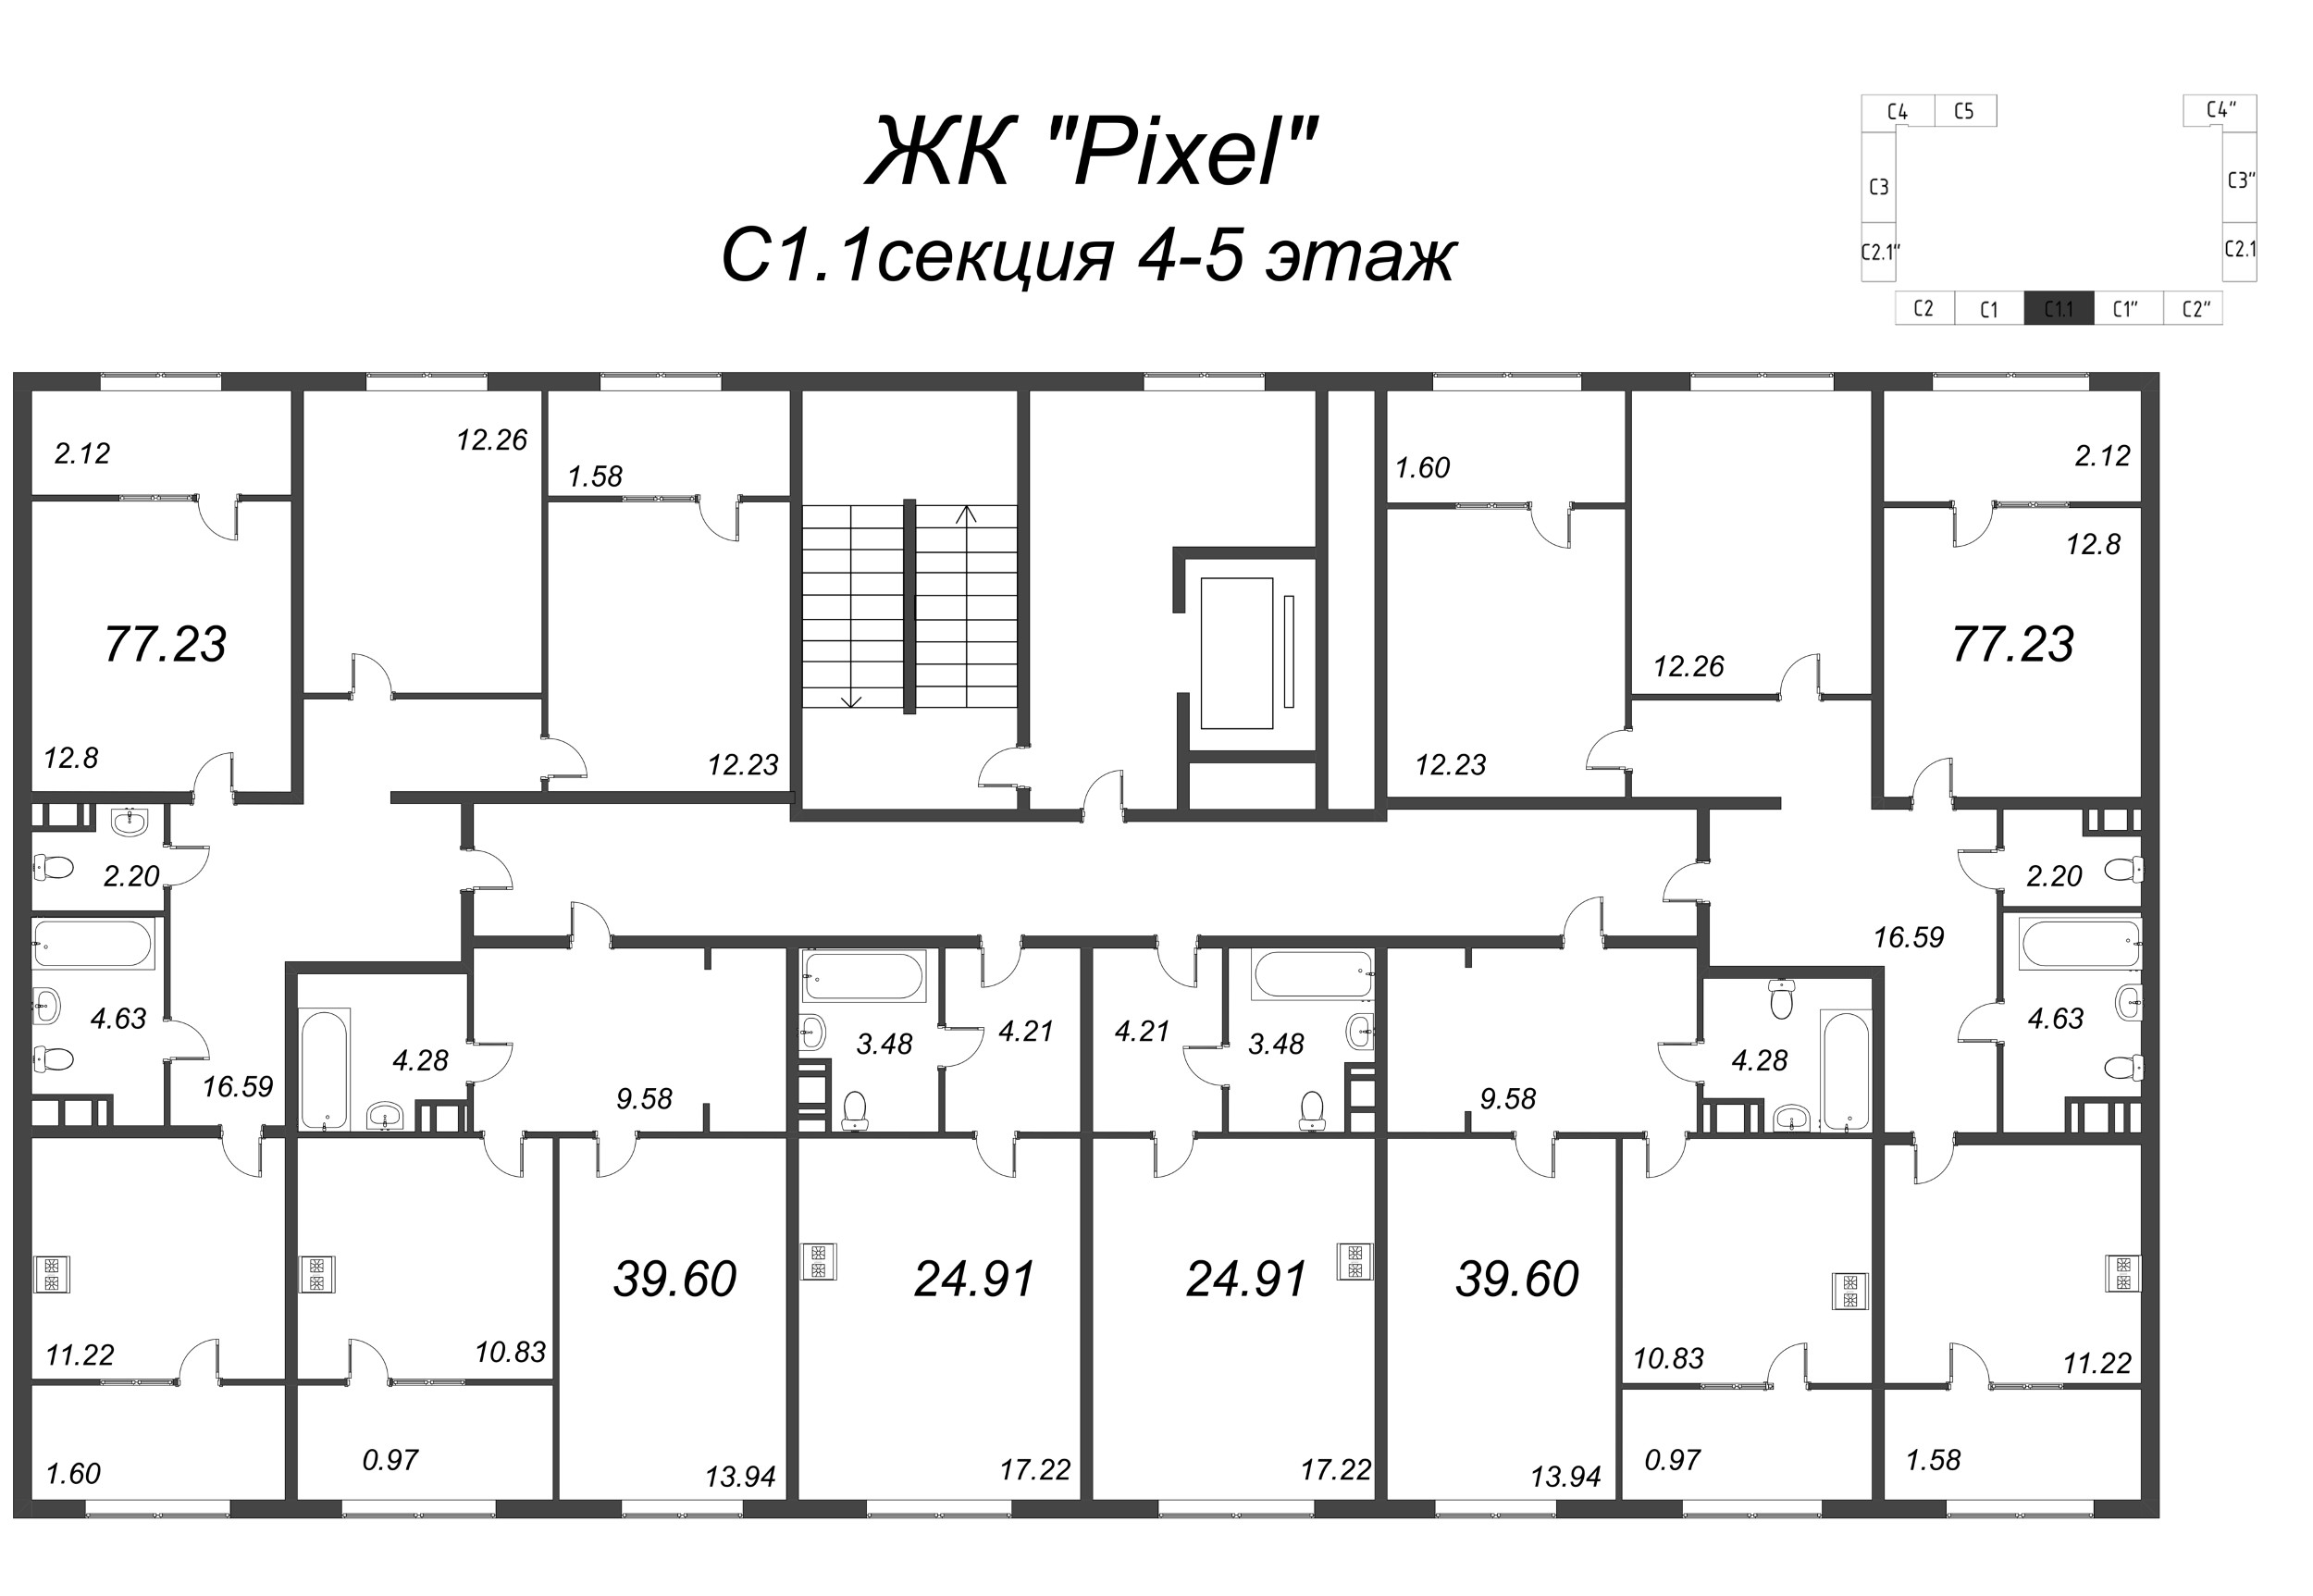 3-комнатная квартира, 85.48 м² в ЖК "Pixel" - планировка этажа